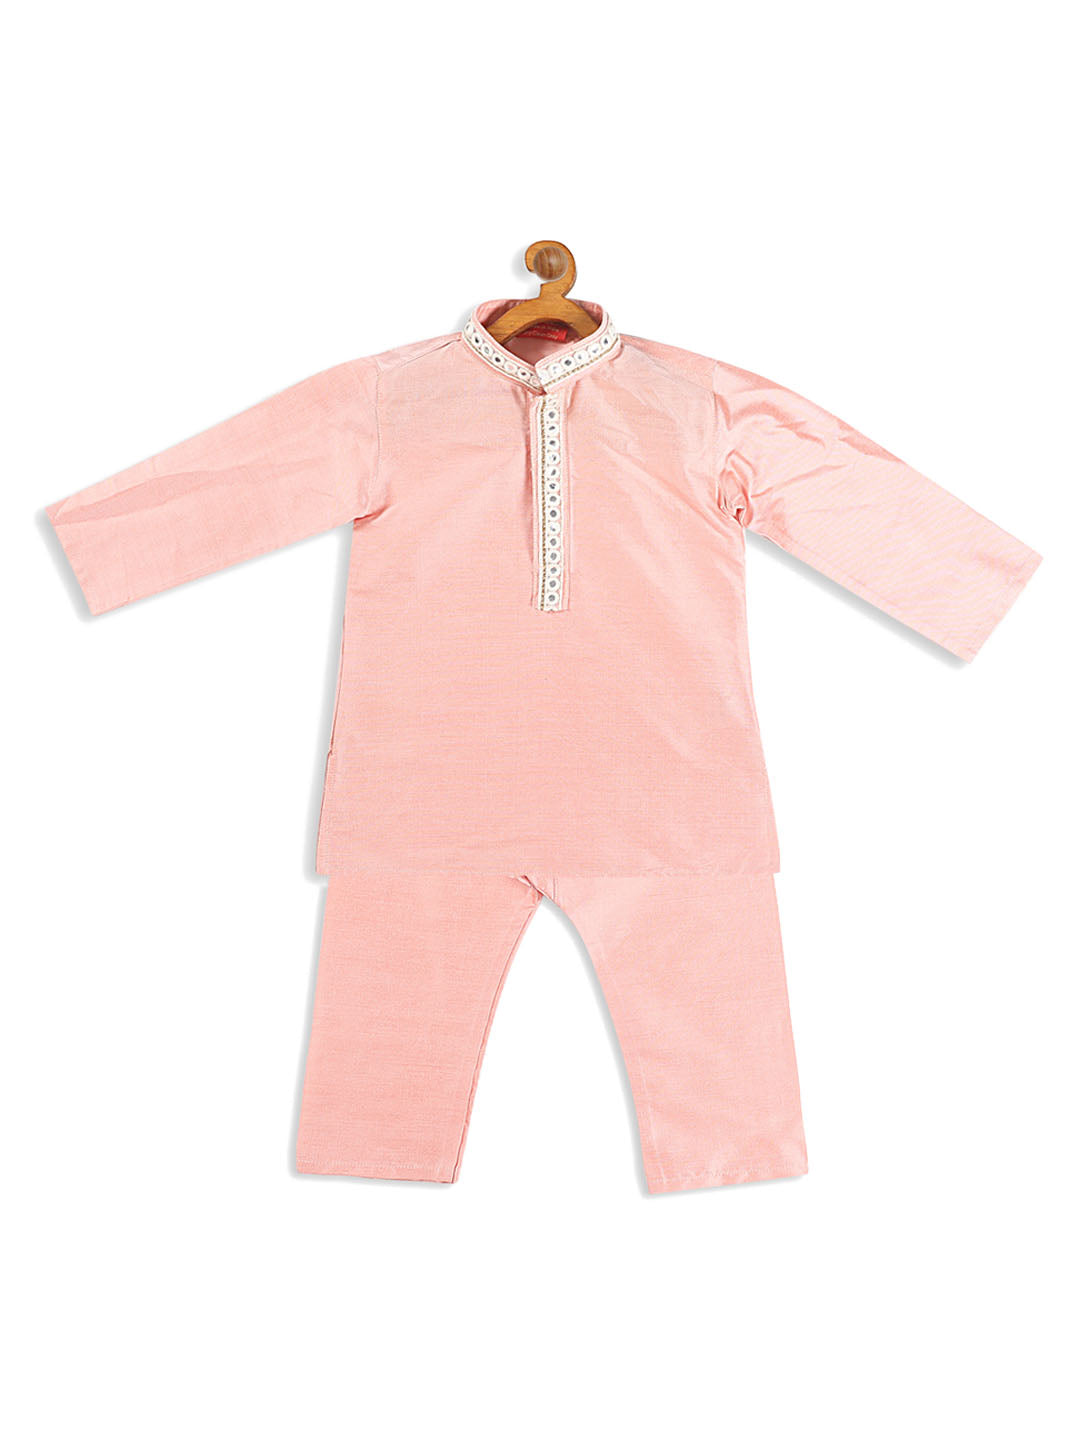 Vastramay Viscose Fabric Pink Mirror Work Border Kurta And Pyjama Set for Boys - Distacart